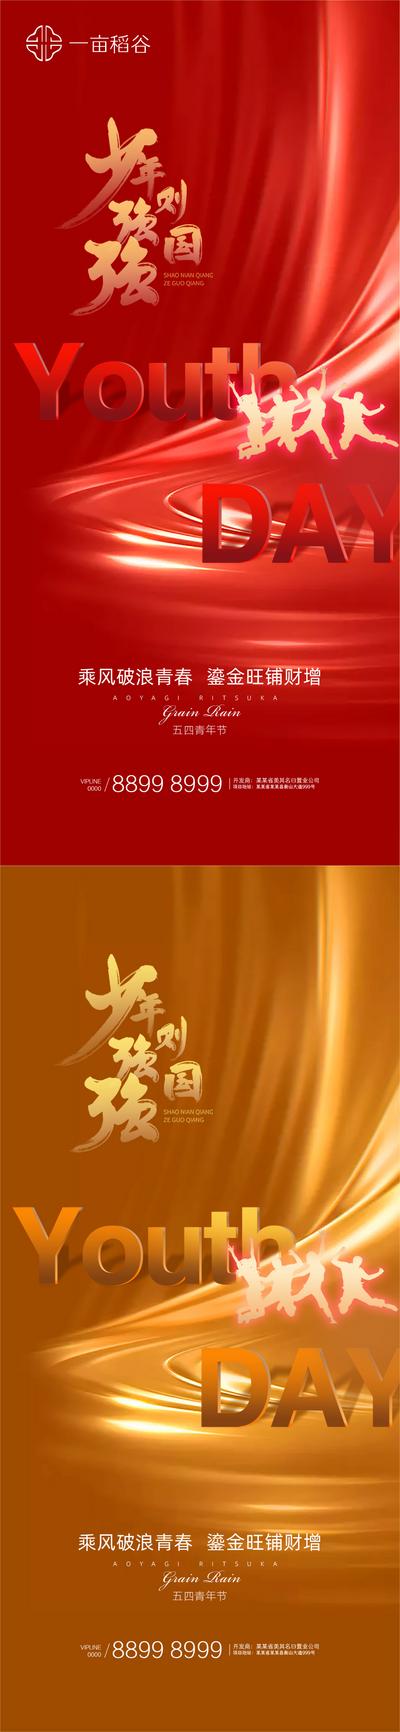 南门网 海报 广告 传统节日 五四 青年节 绚丽 氛围